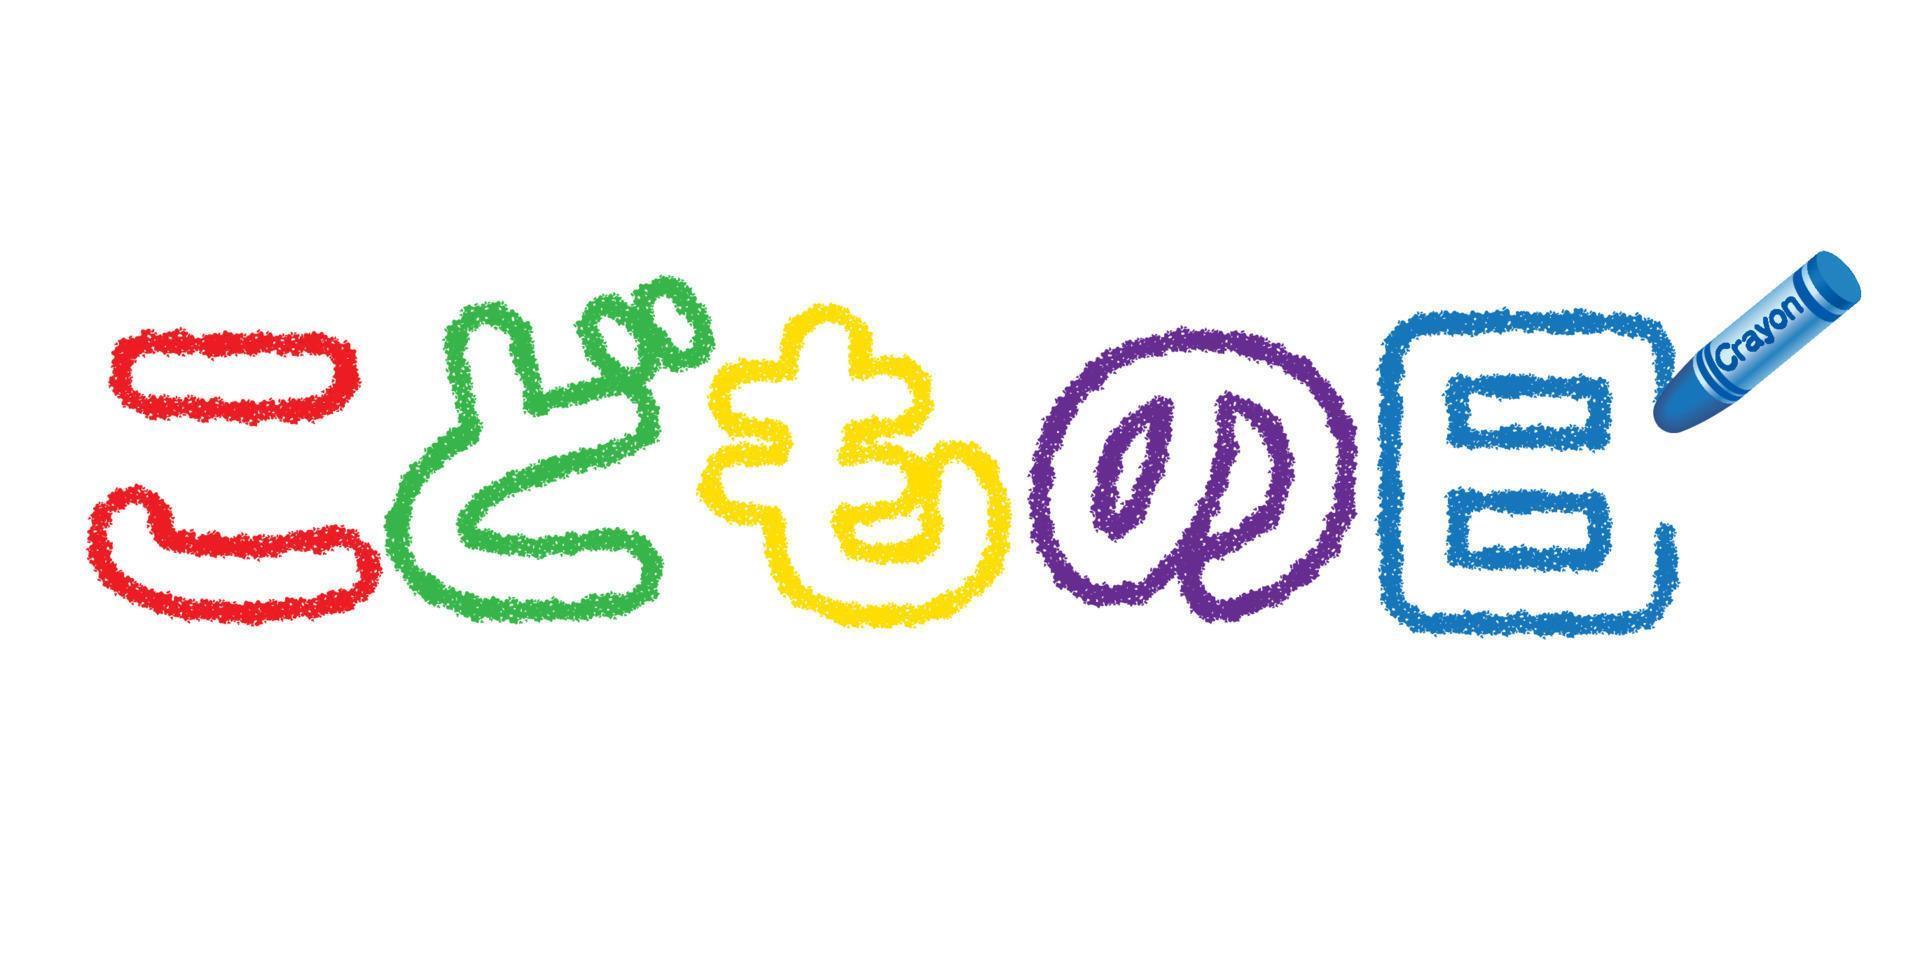 logotipo de lápis de vetor do festival de meninos japoneses isolado em um fundo branco. tradução de texto - festival de meninos.